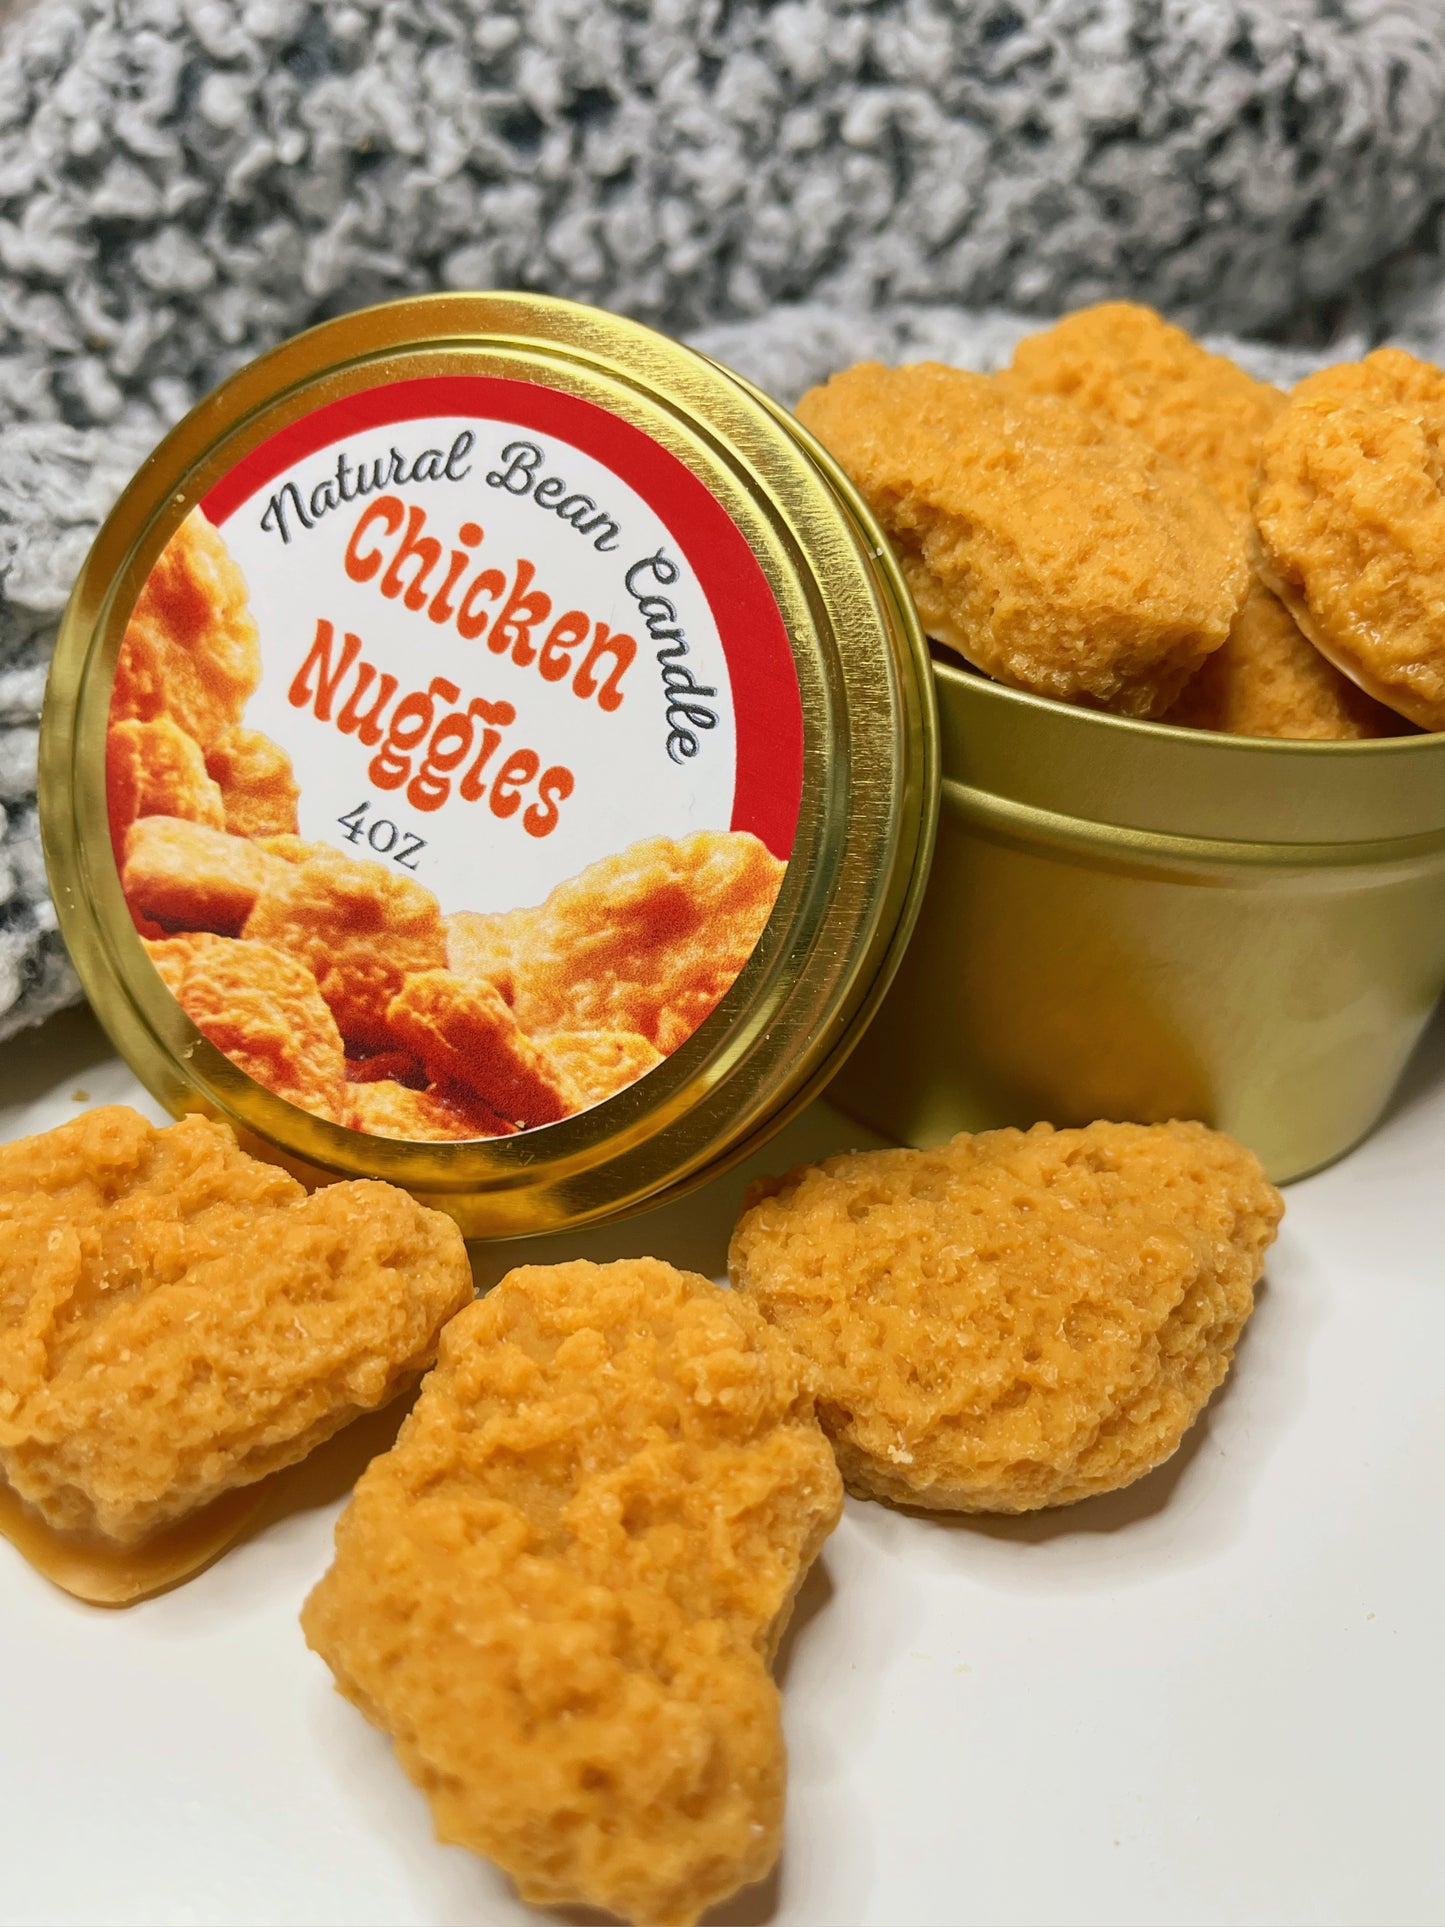 Chicken nuggie